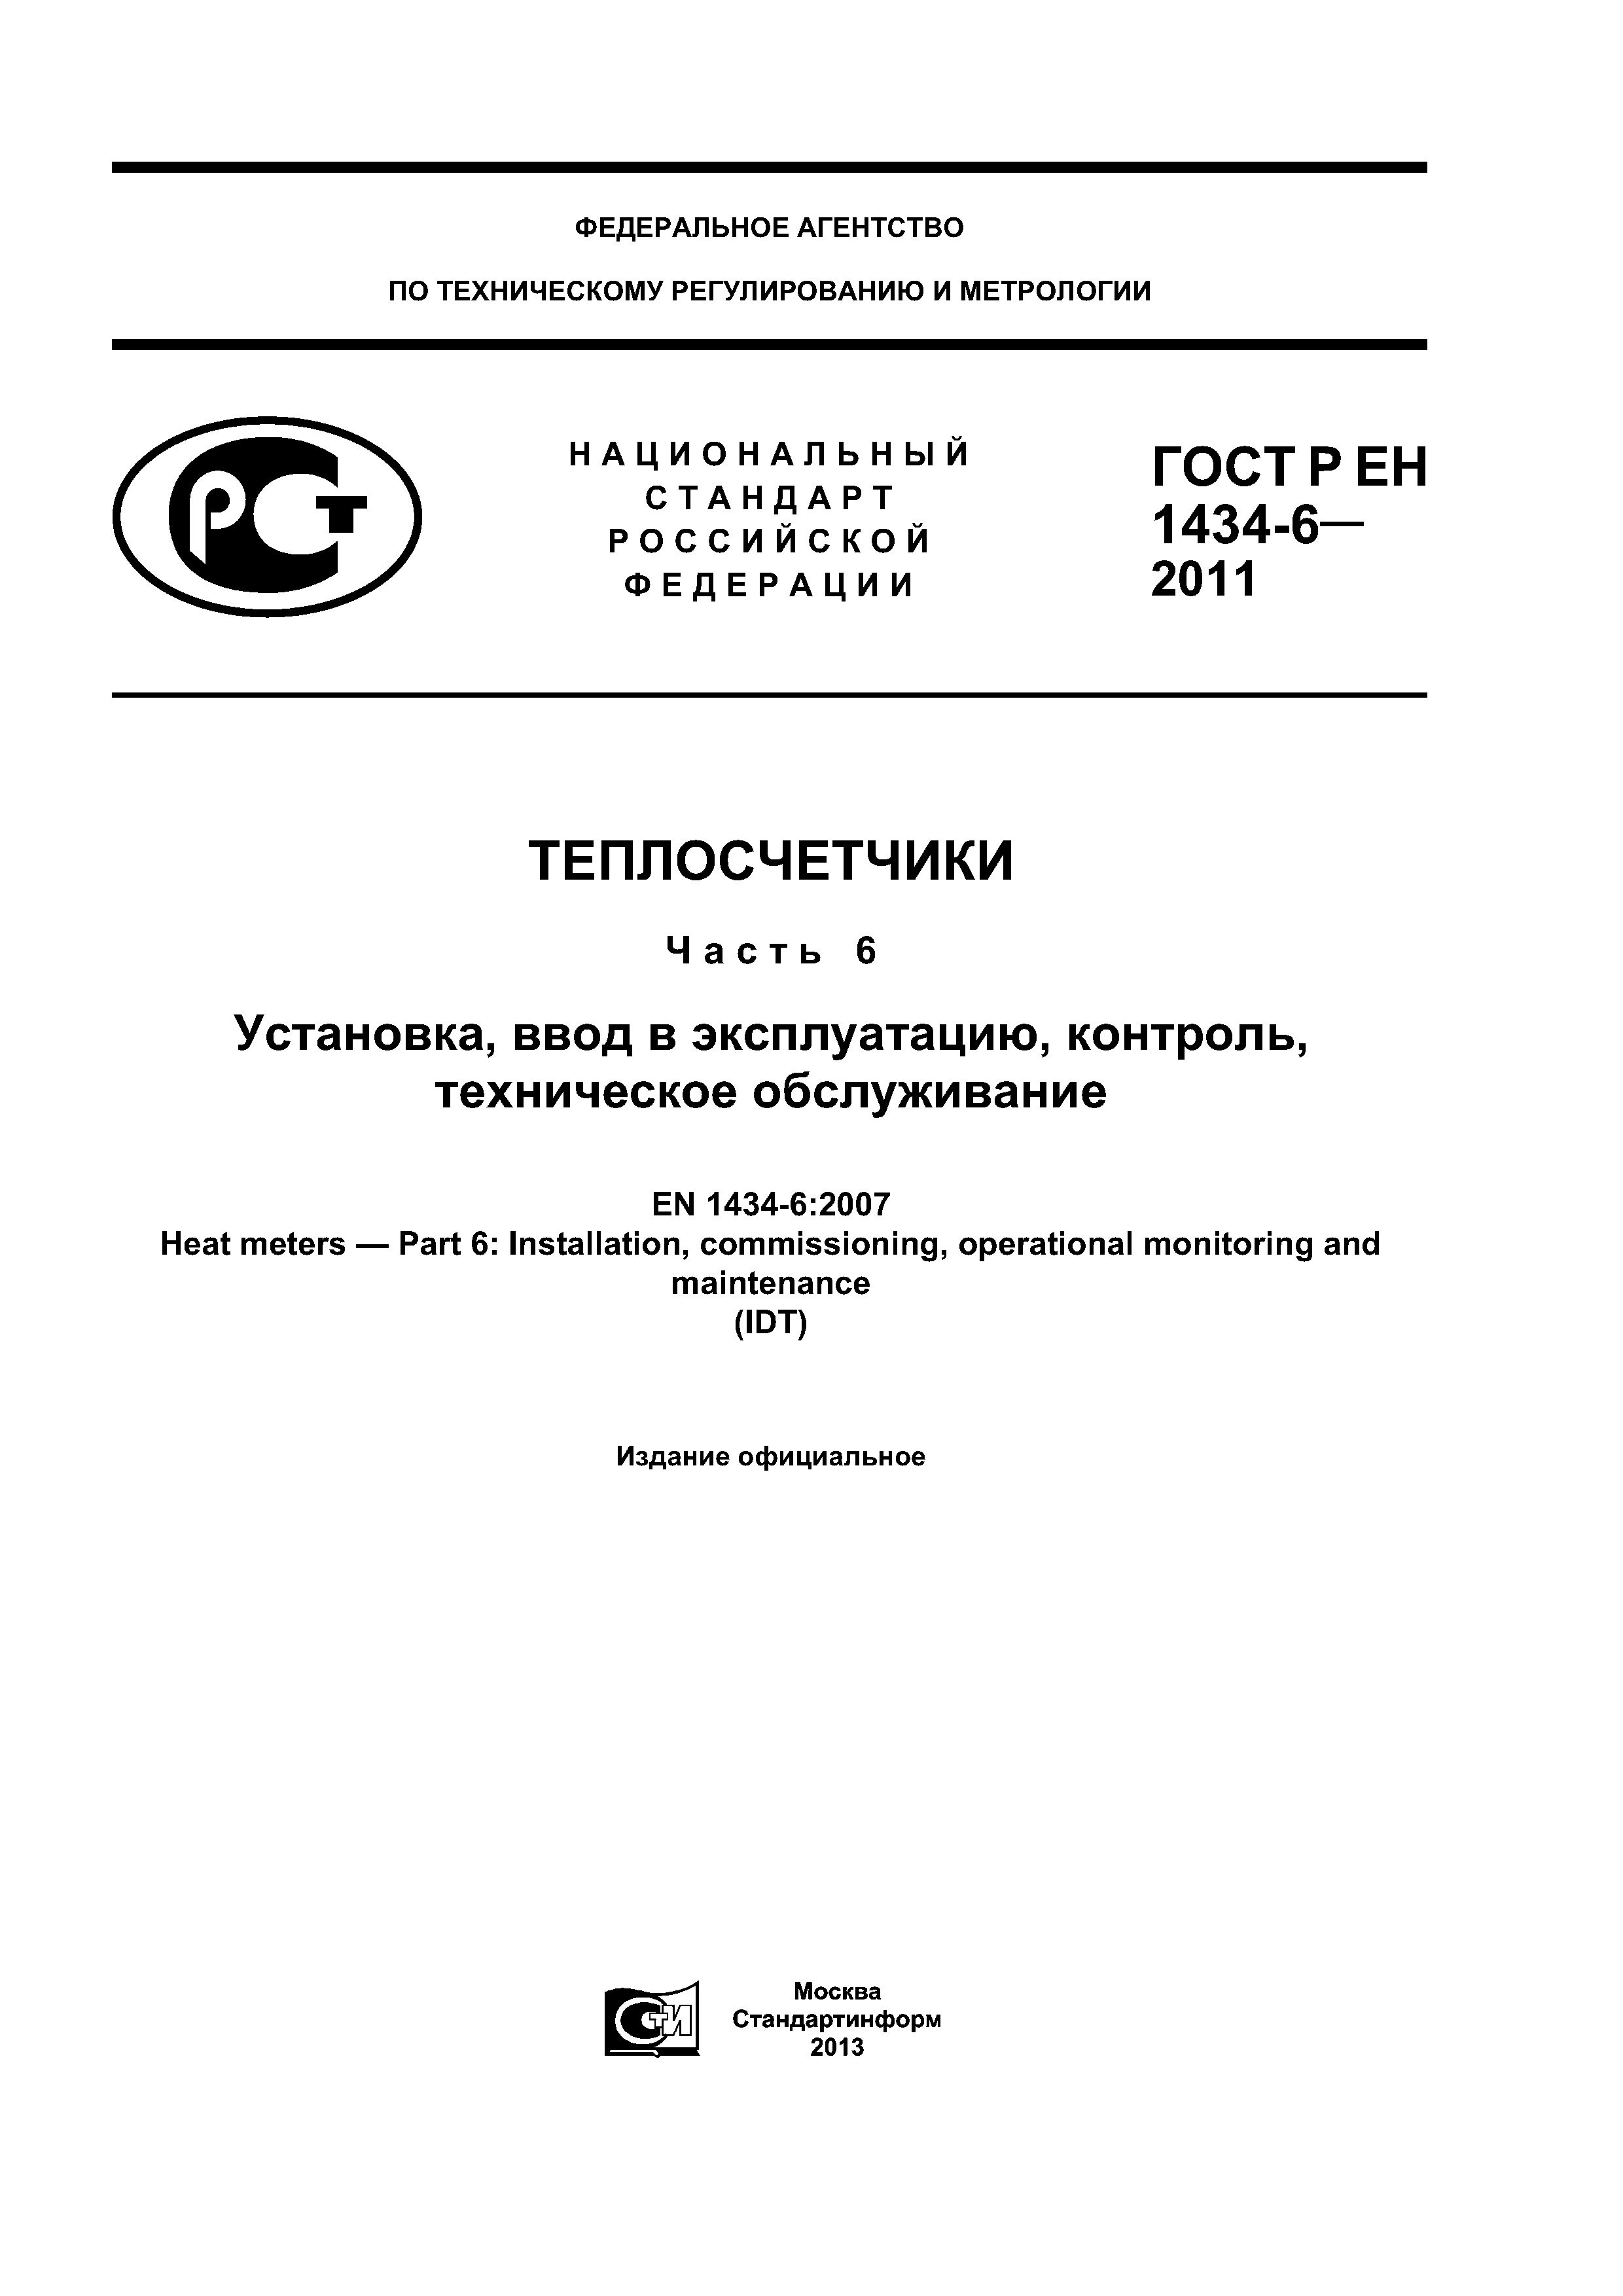 ГОСТ Р ЕН 1434-6-2011